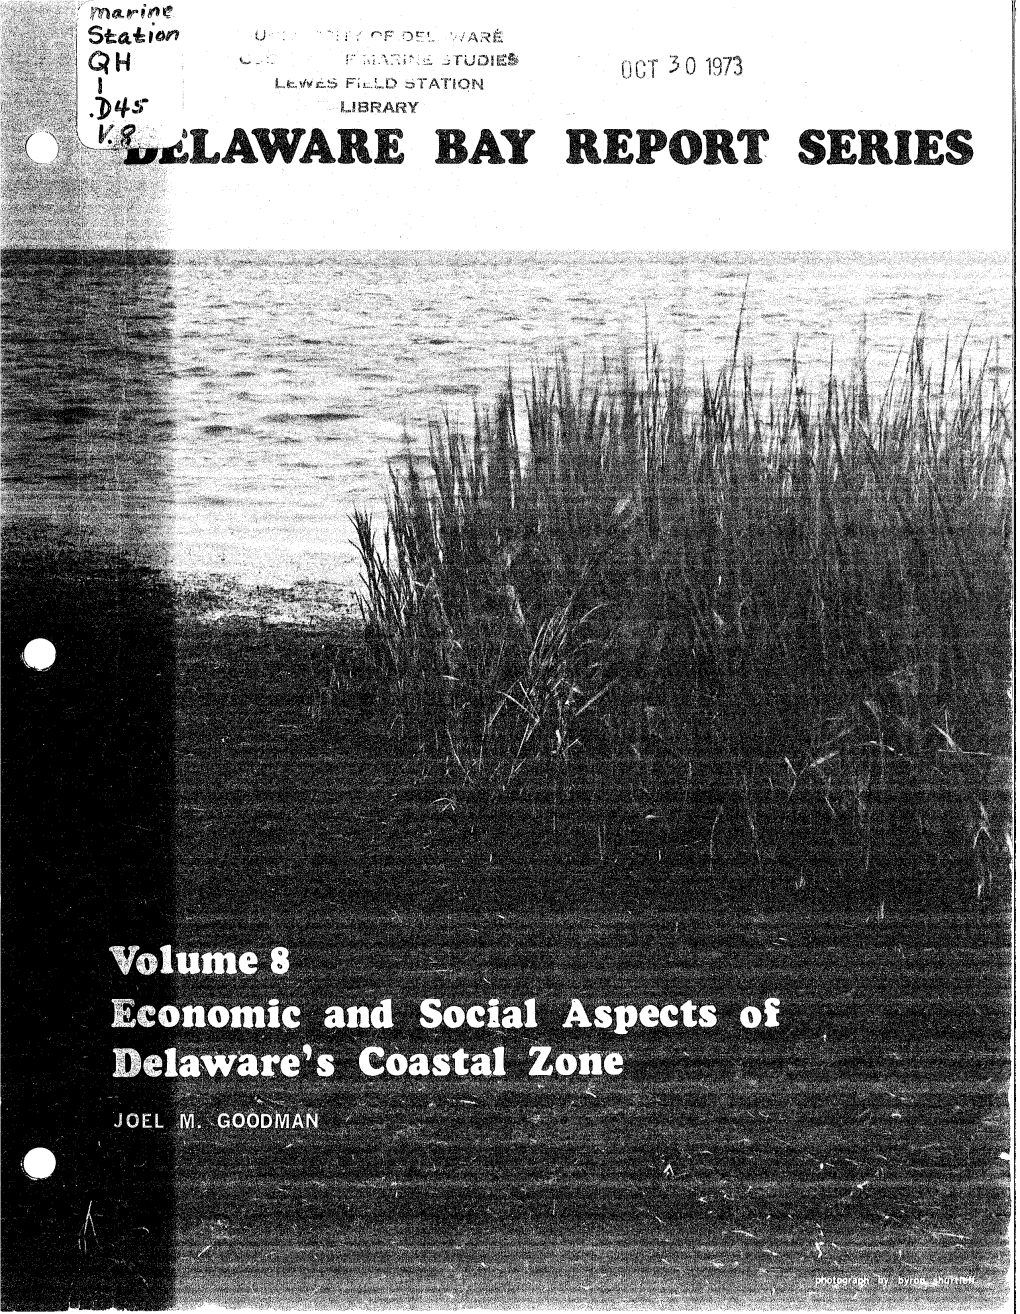 E Bay Report Se I S Delaware Bay Report Series